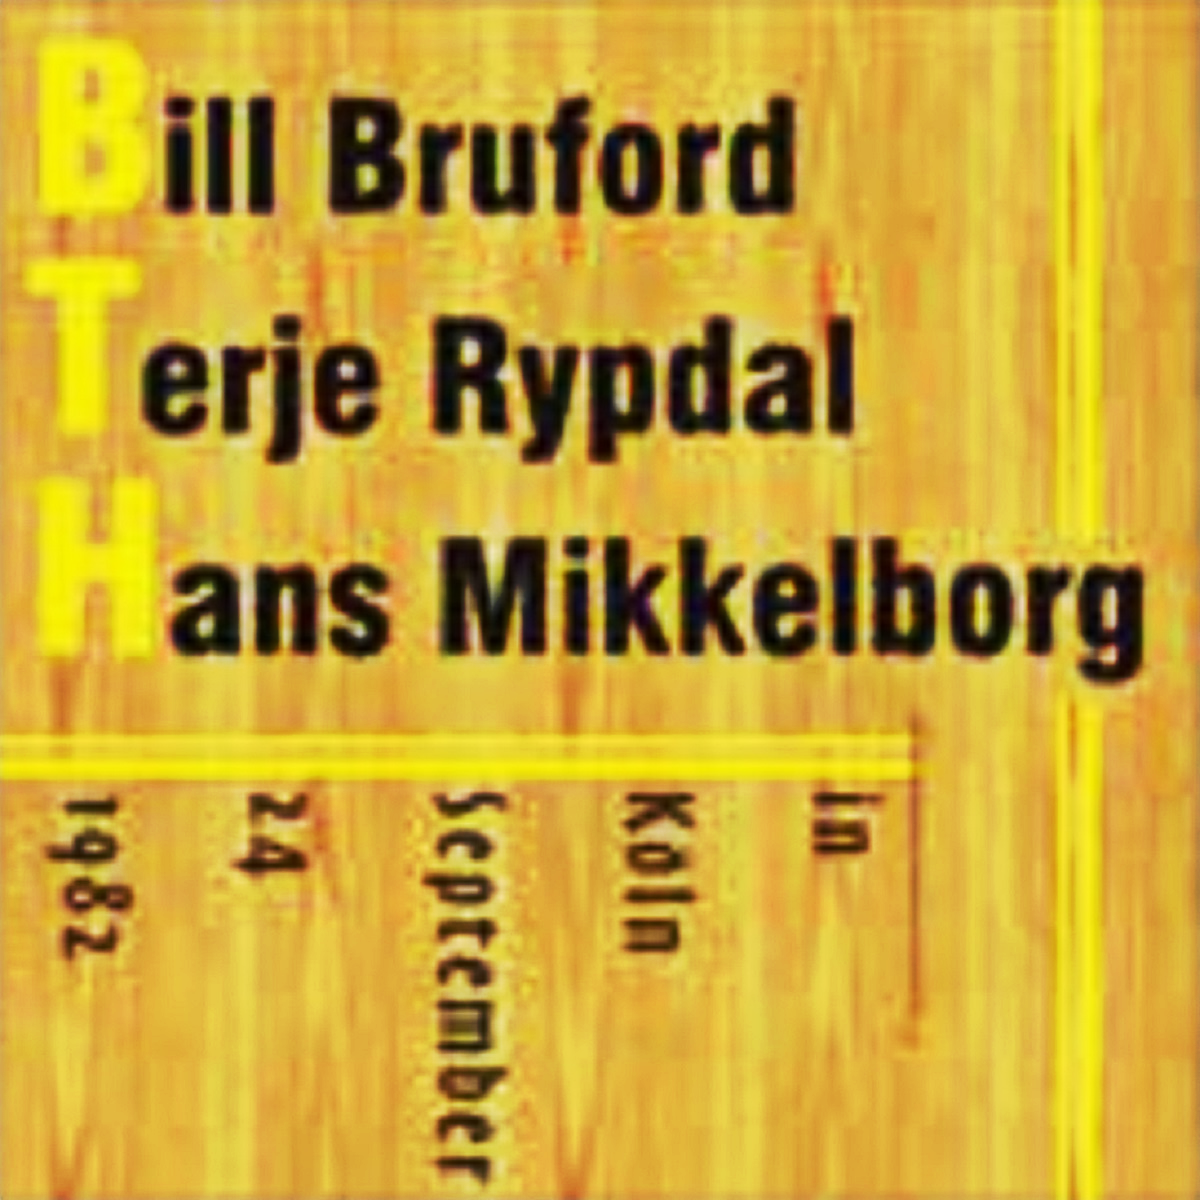 BrufordRypdalMikkelborg1982-09-24GrosserSendesaalKolnGermany.png